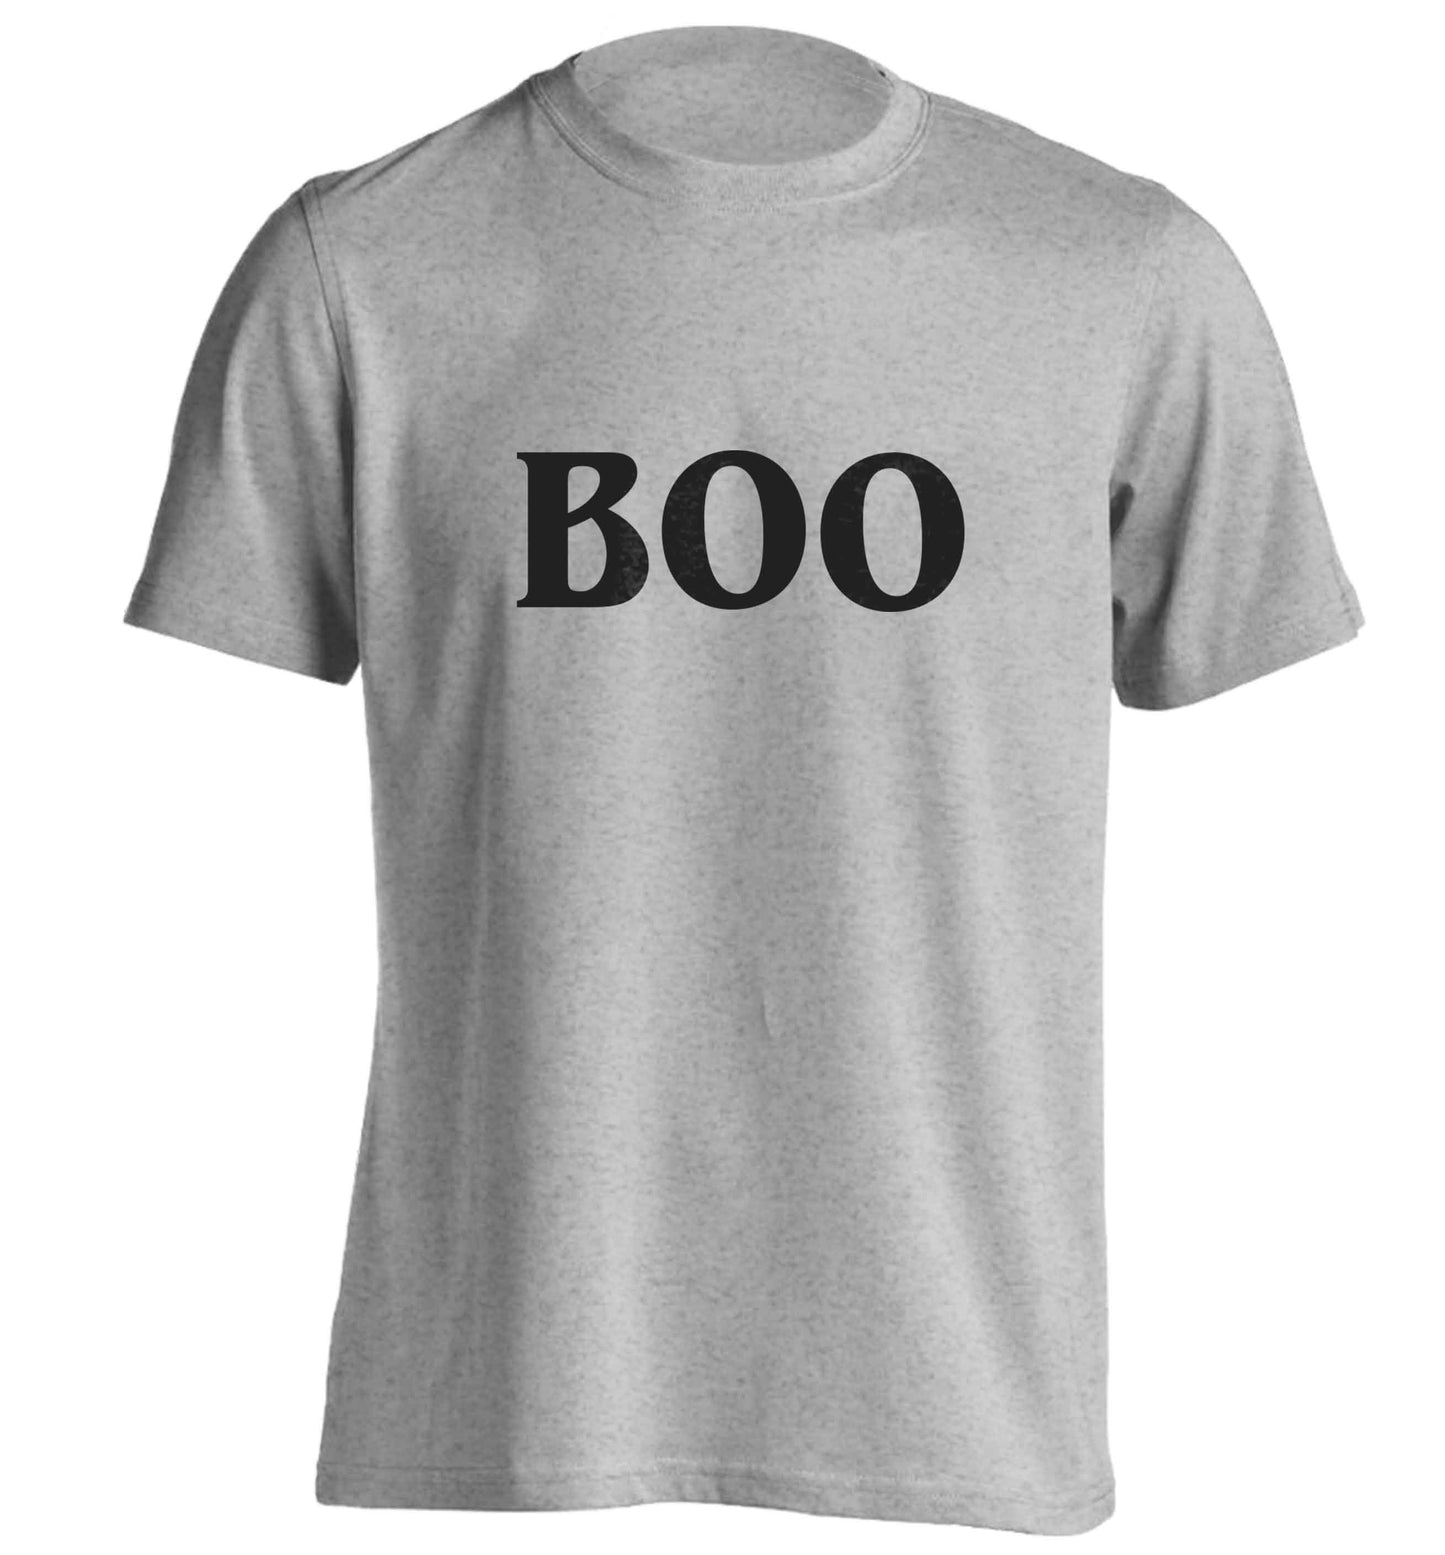 Boo adults unisex grey Tshirt 2XL